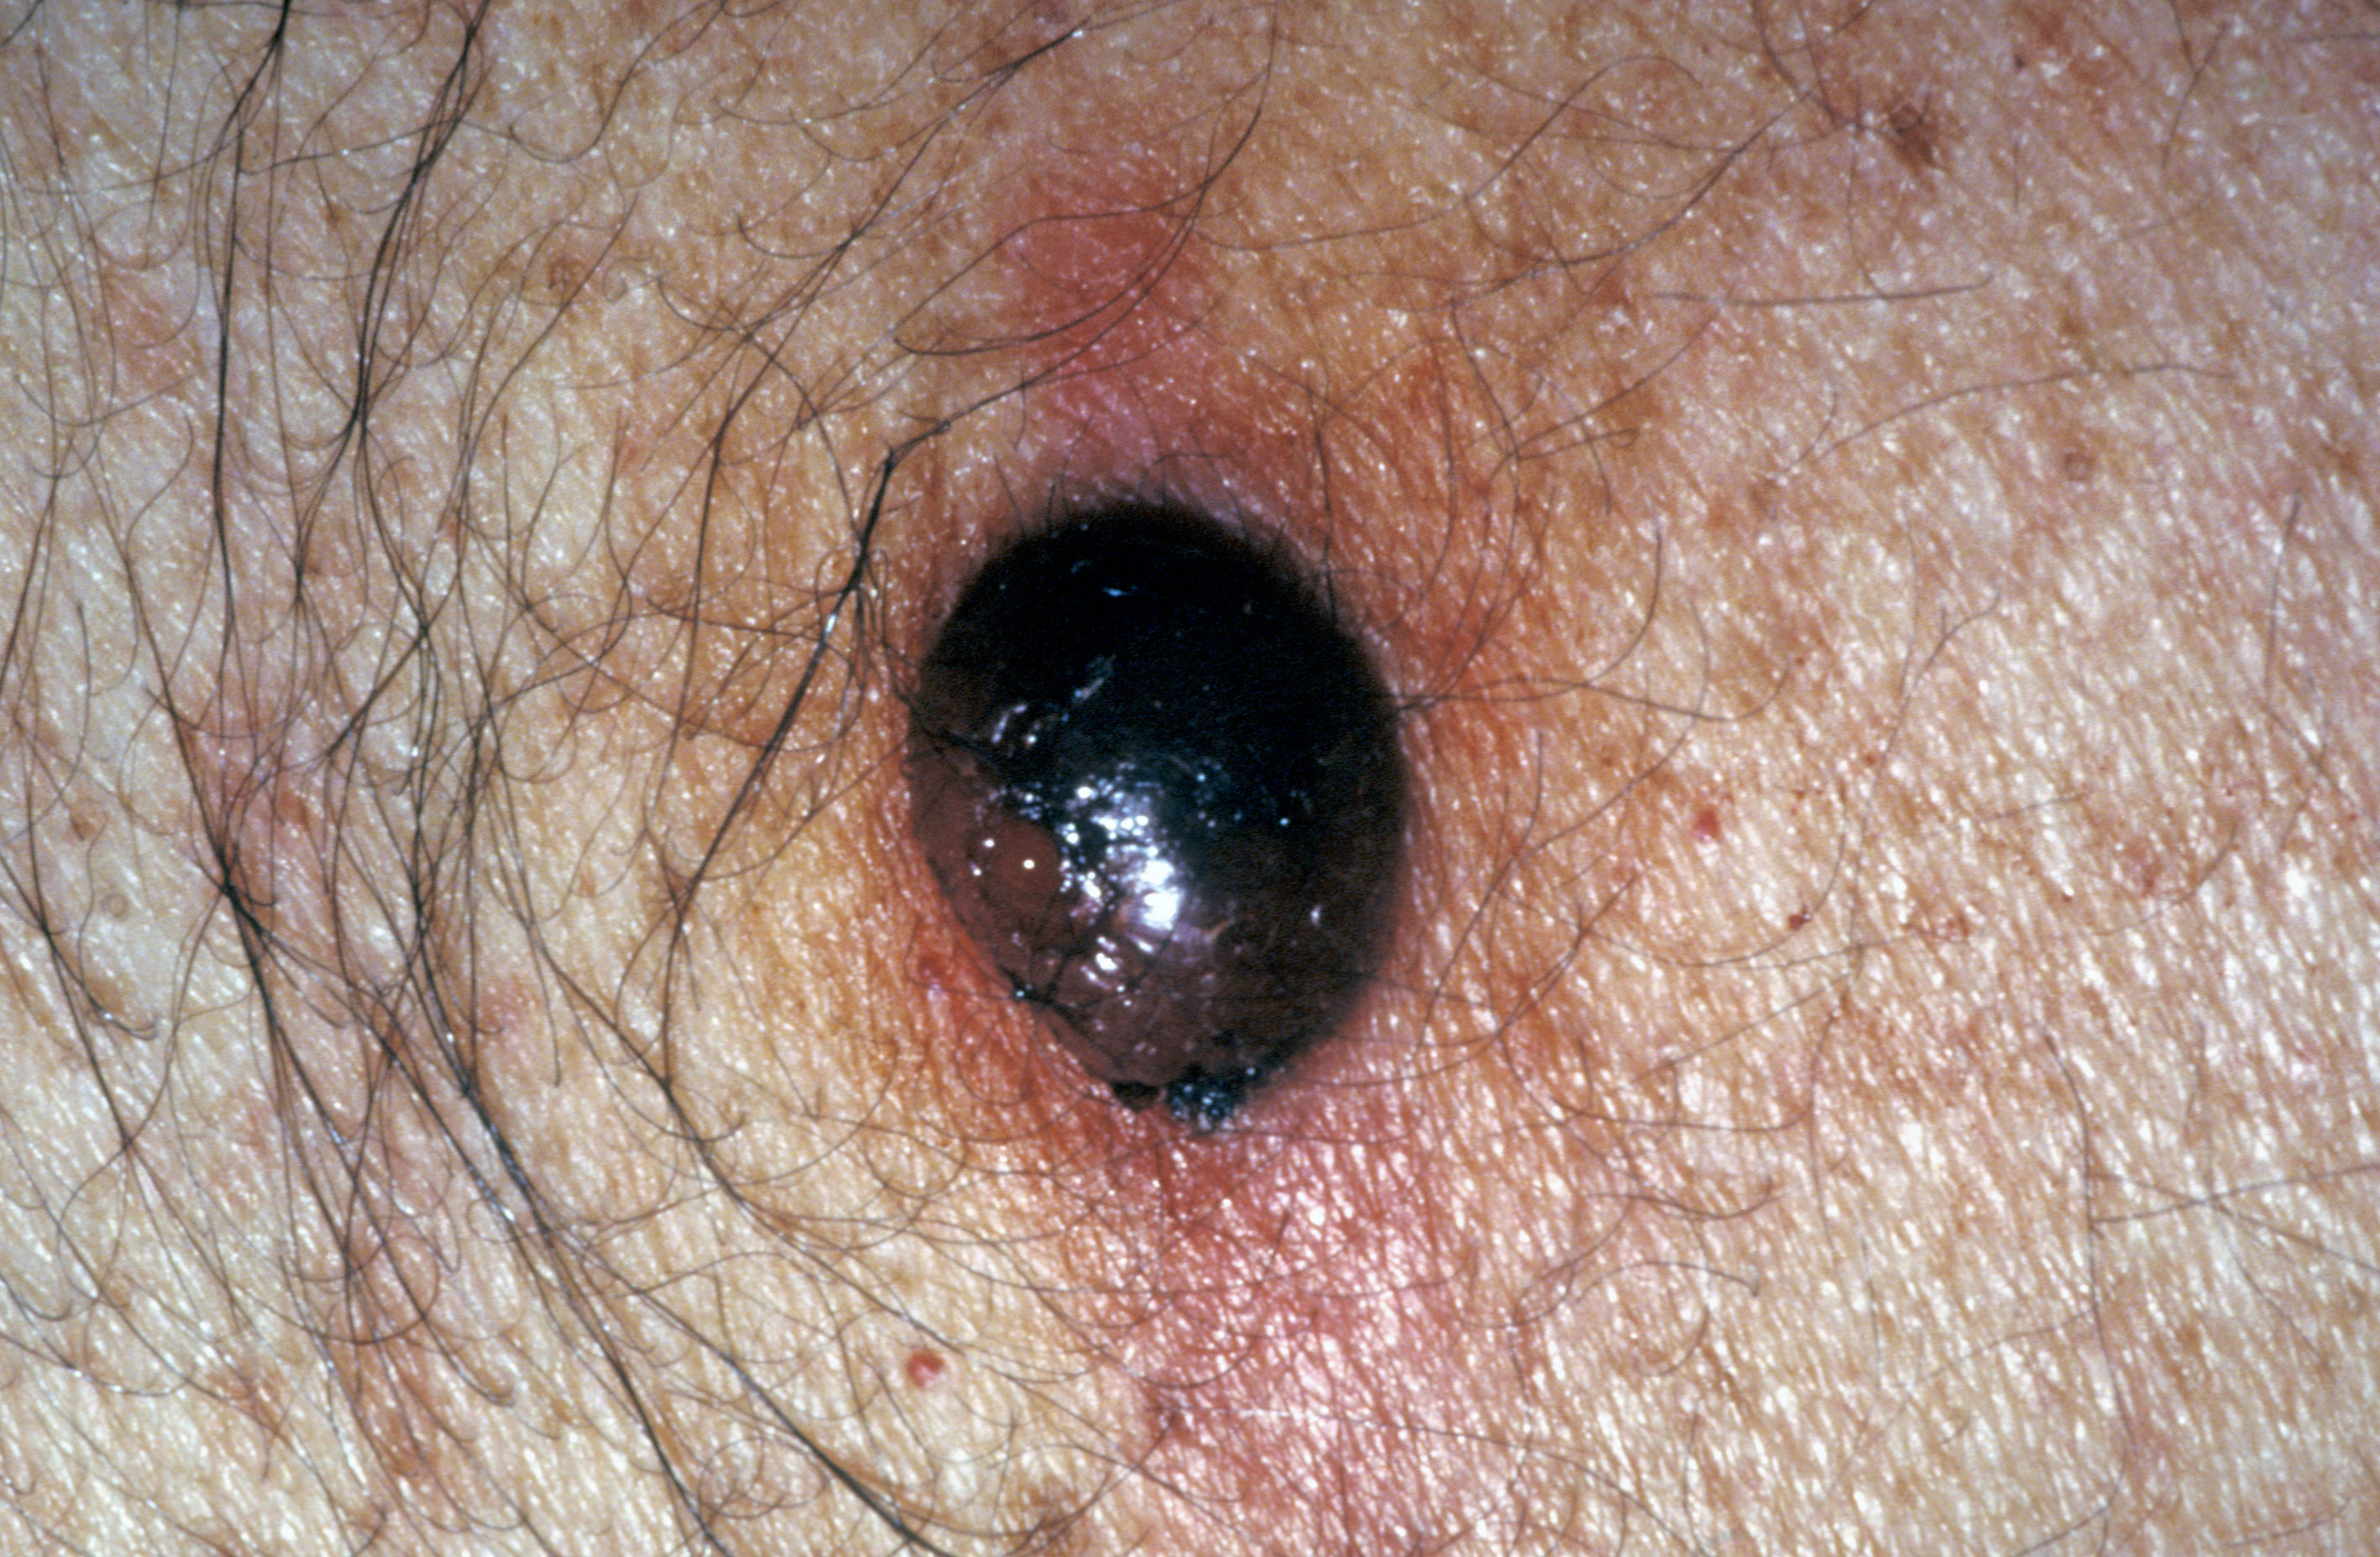 An image showing a nodular melanoma.